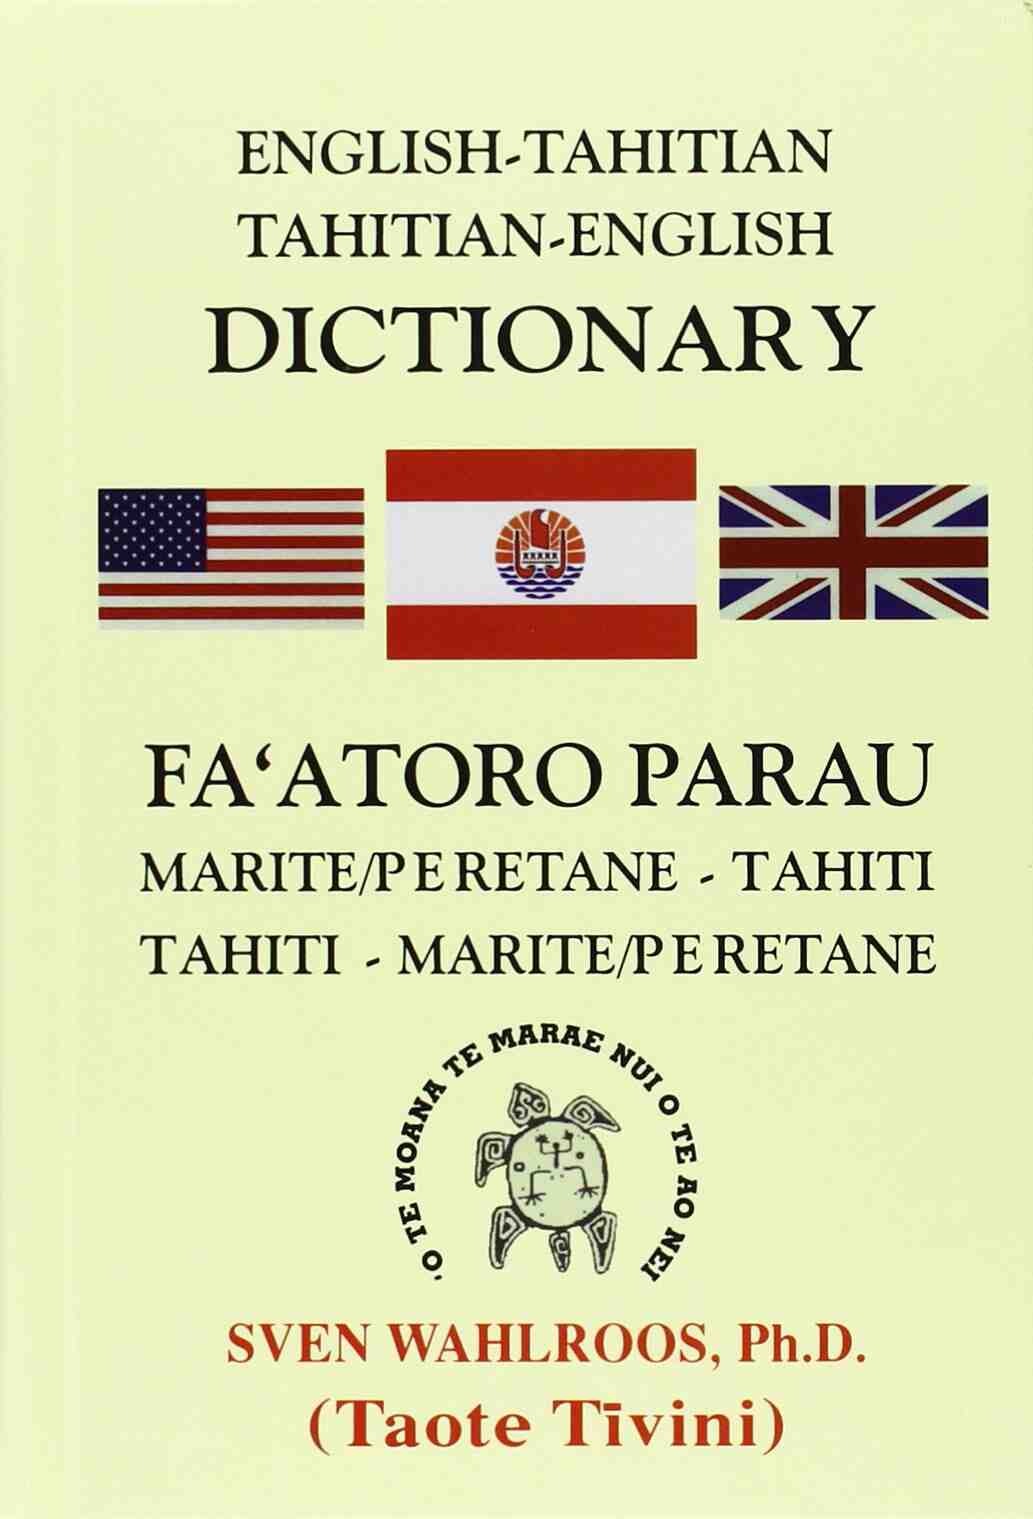 图片库 4：塔希提岛说什么语言？